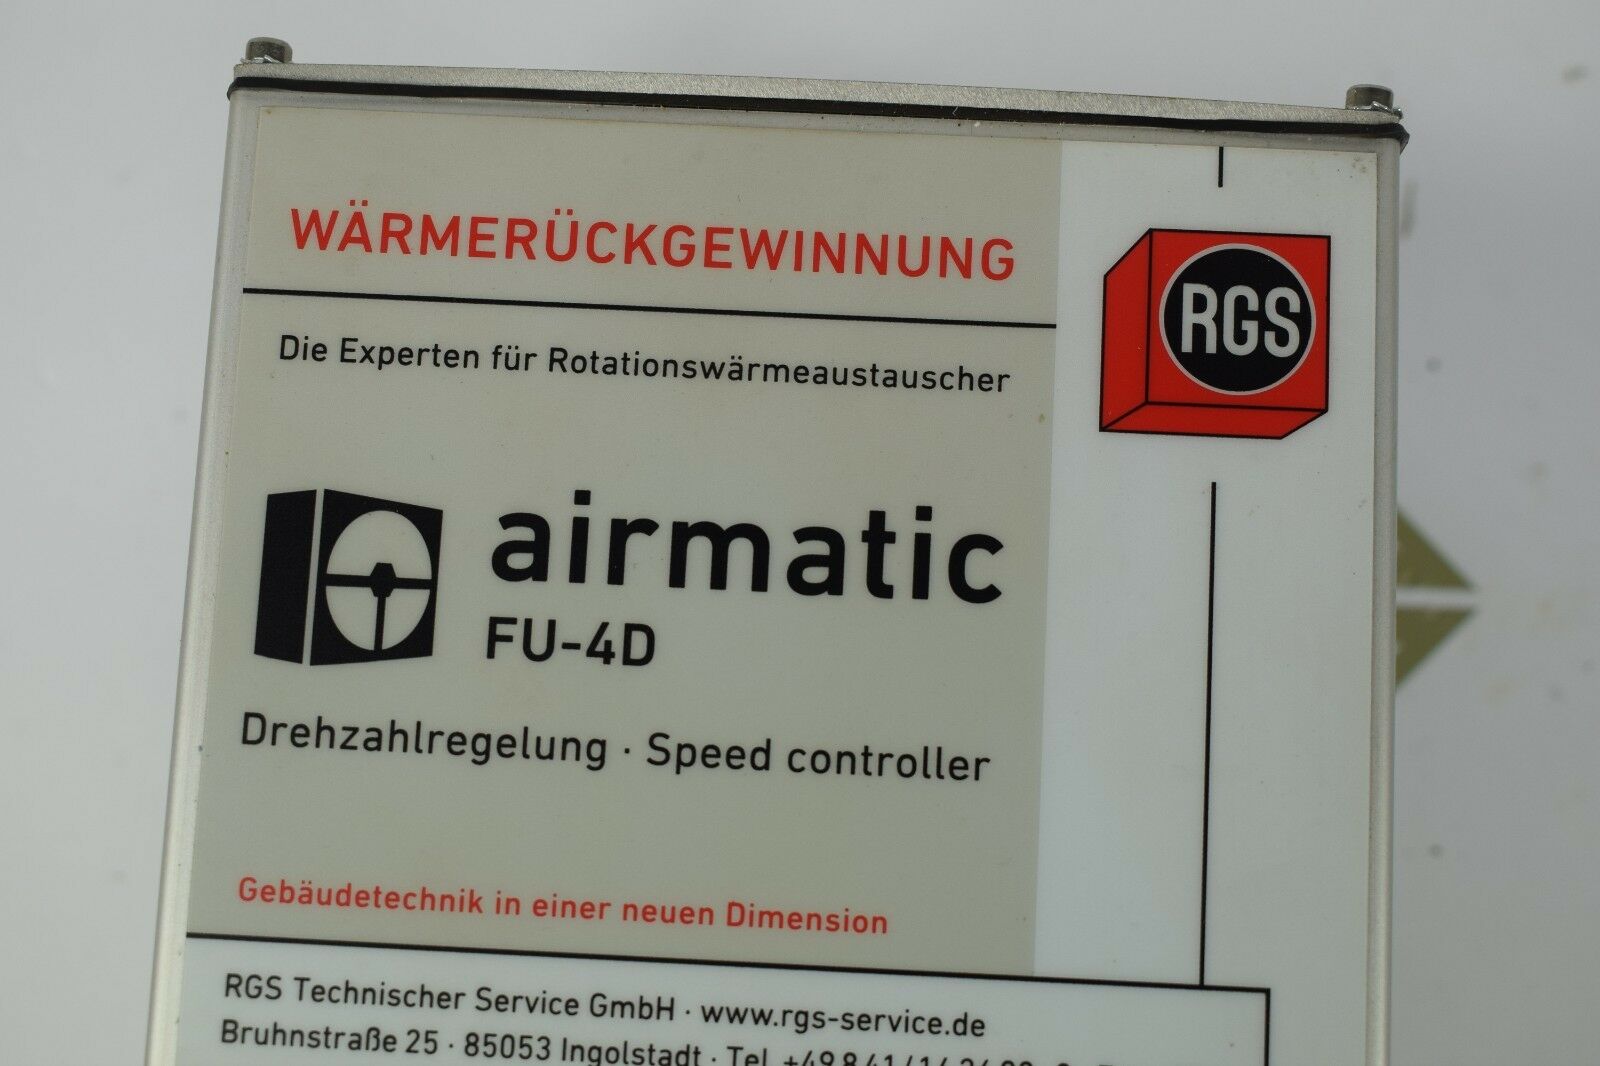 RGS airmatic Drehzahlregelung FU-4D 